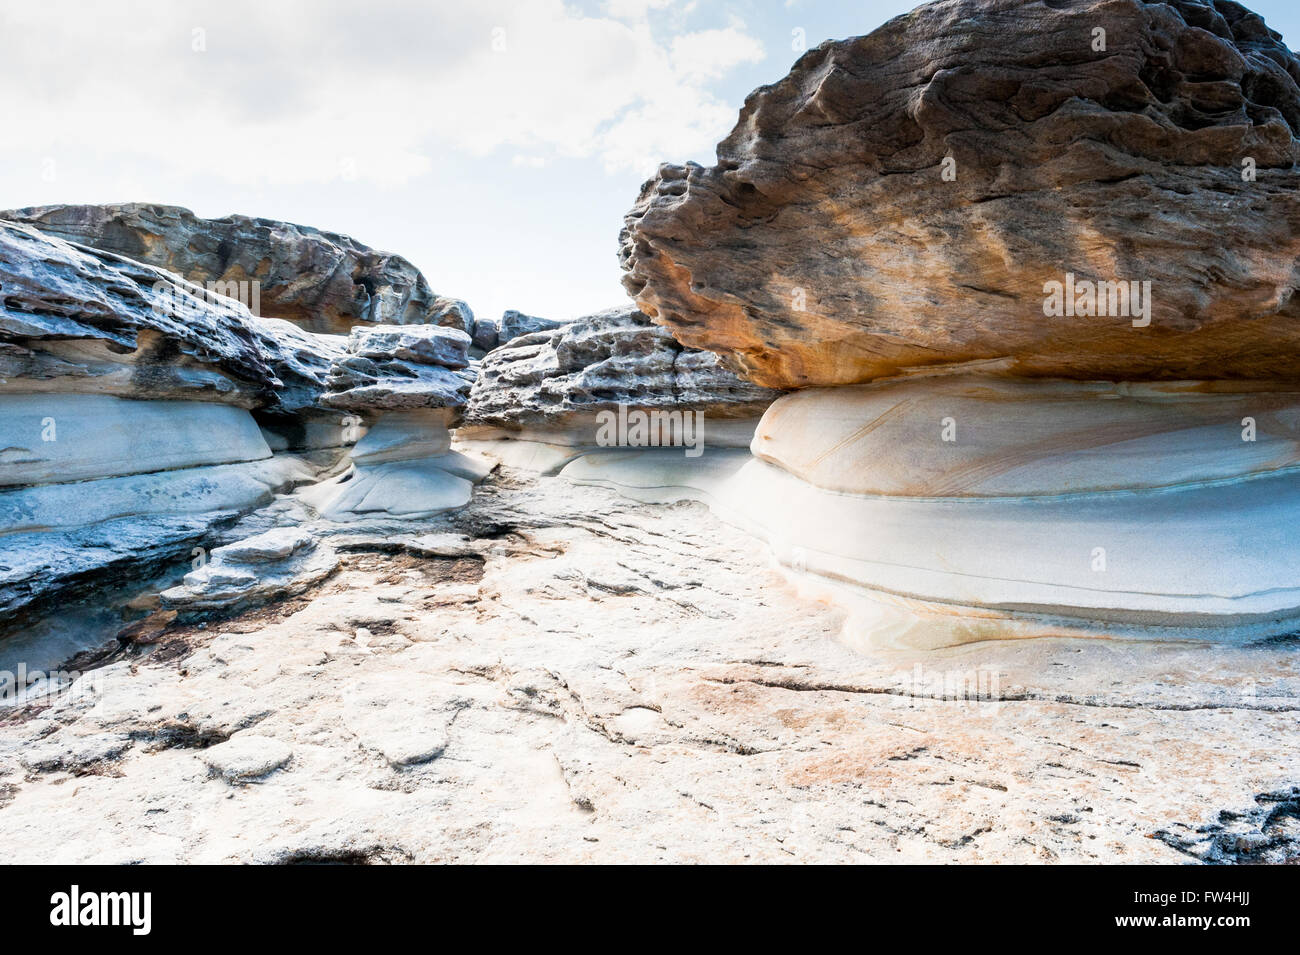 Formaciones de roca erosionada por el viento y el agua a lo largo de la bondi de Coogee acantilado costero en los suburbios del este de Sydney Australia. Foto de stock